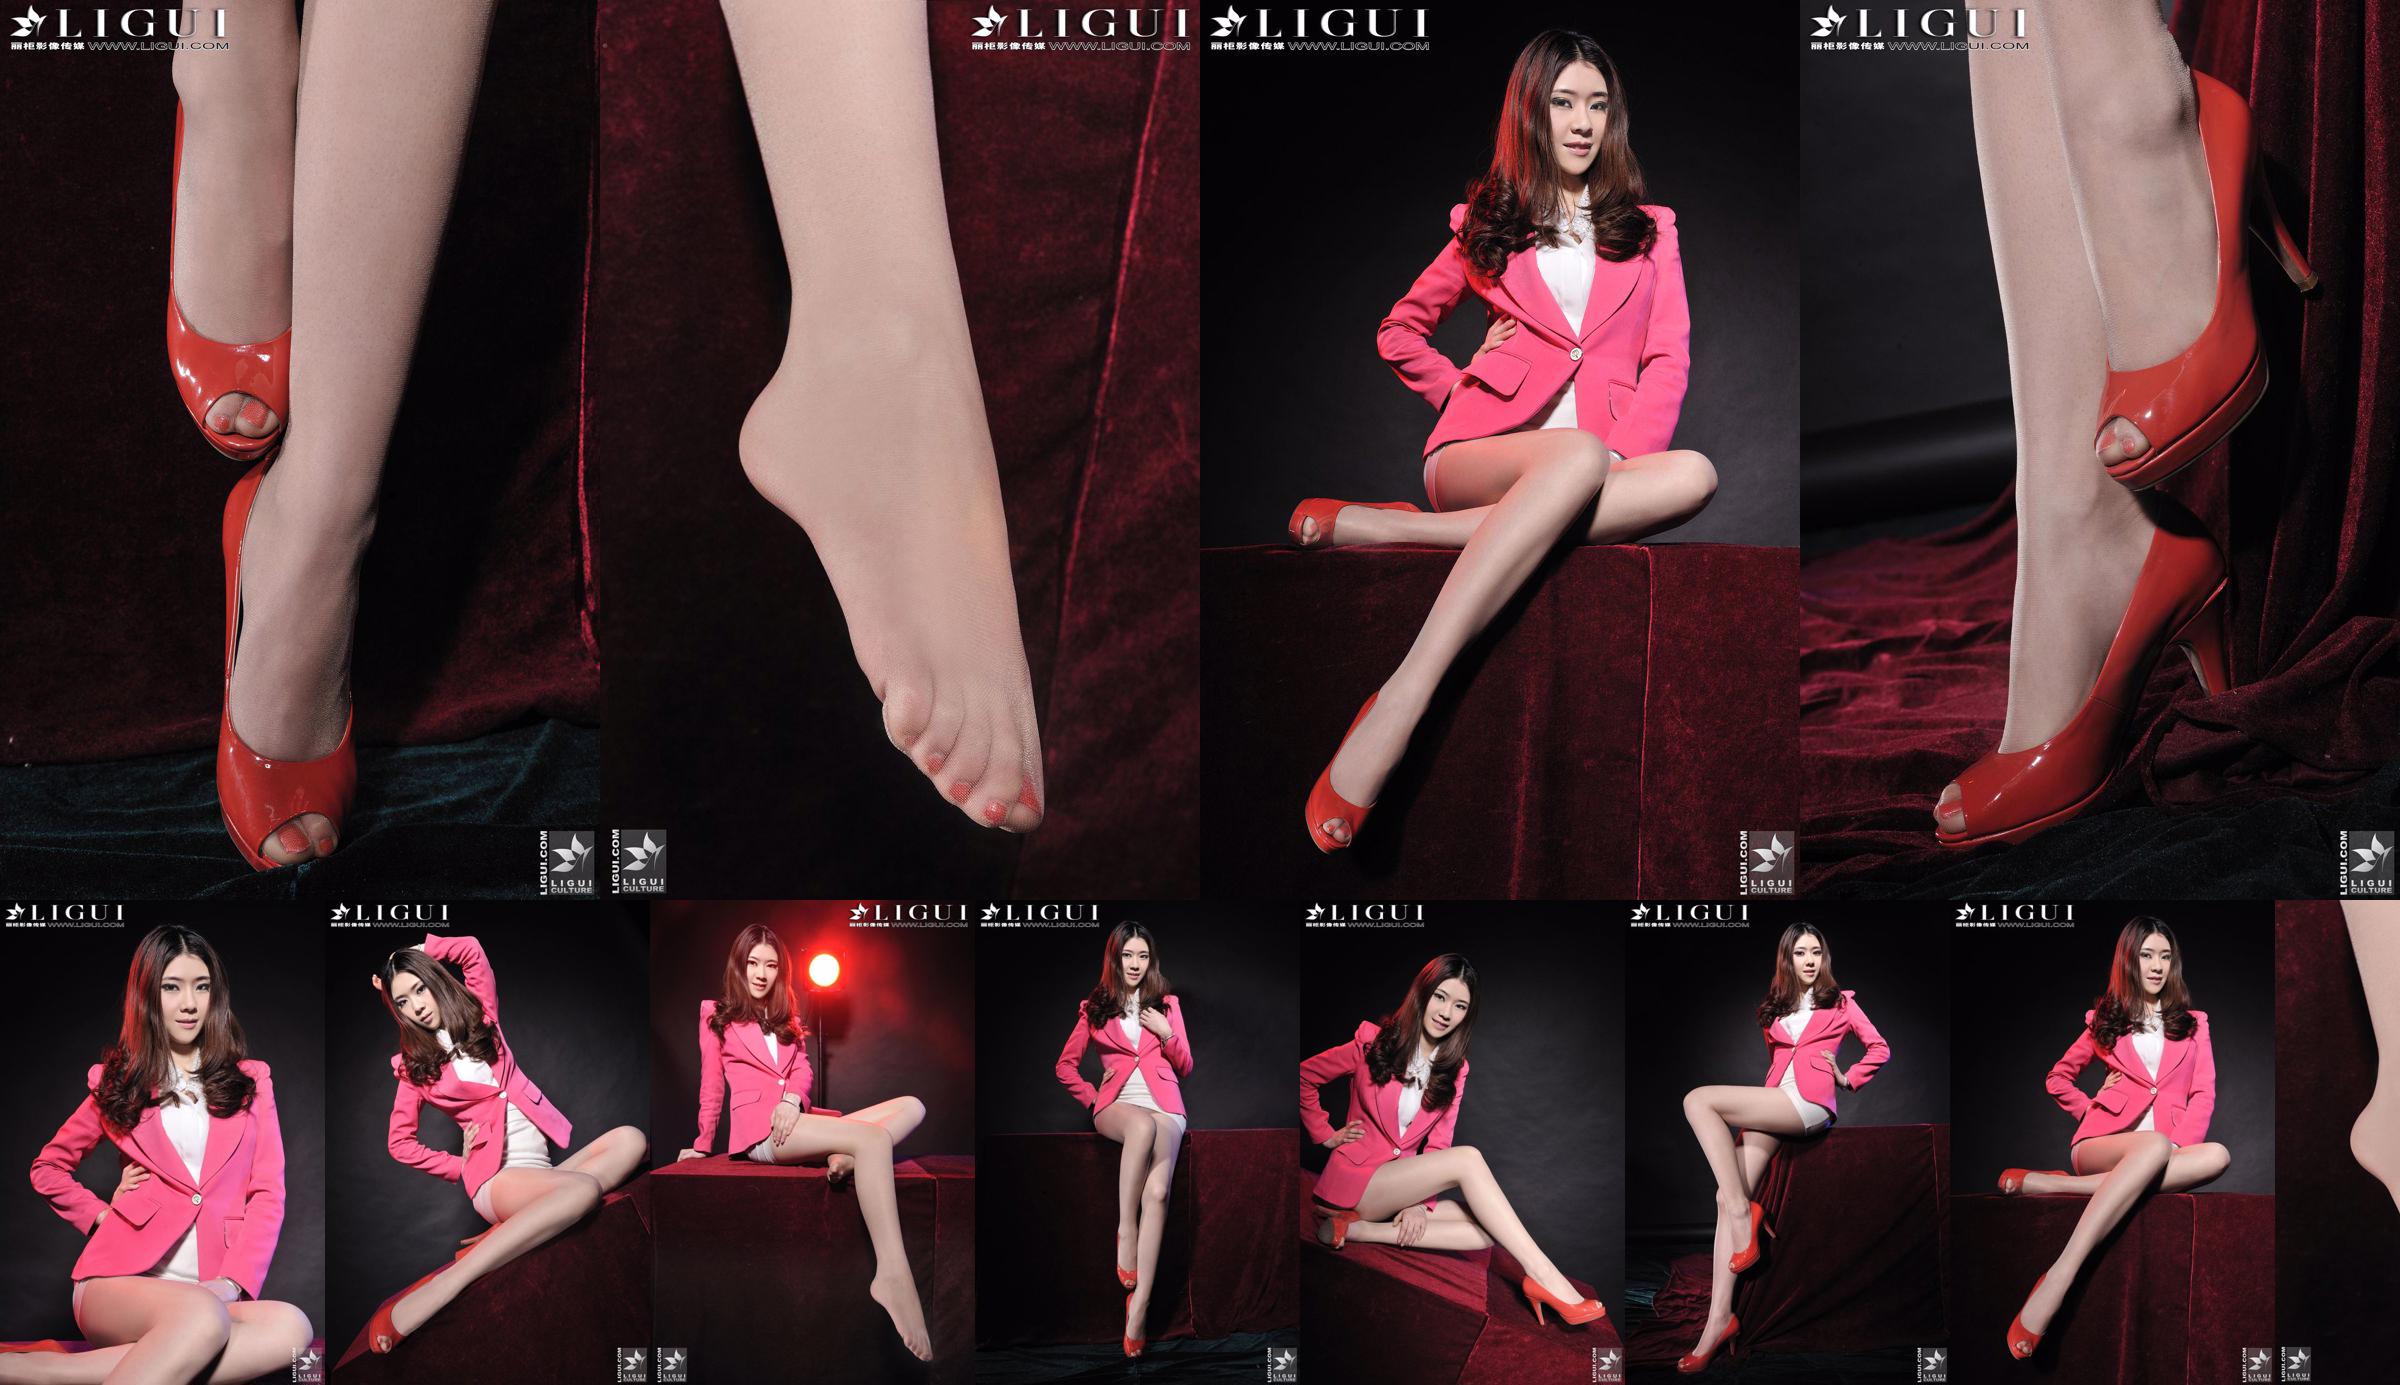 นางแบบ Chenchen "สาวส้นสูงสีแดง" [丽柜 LiGui] รูปถ่ายขาสวยและเท้าหยก No.1895a9 หน้า 6